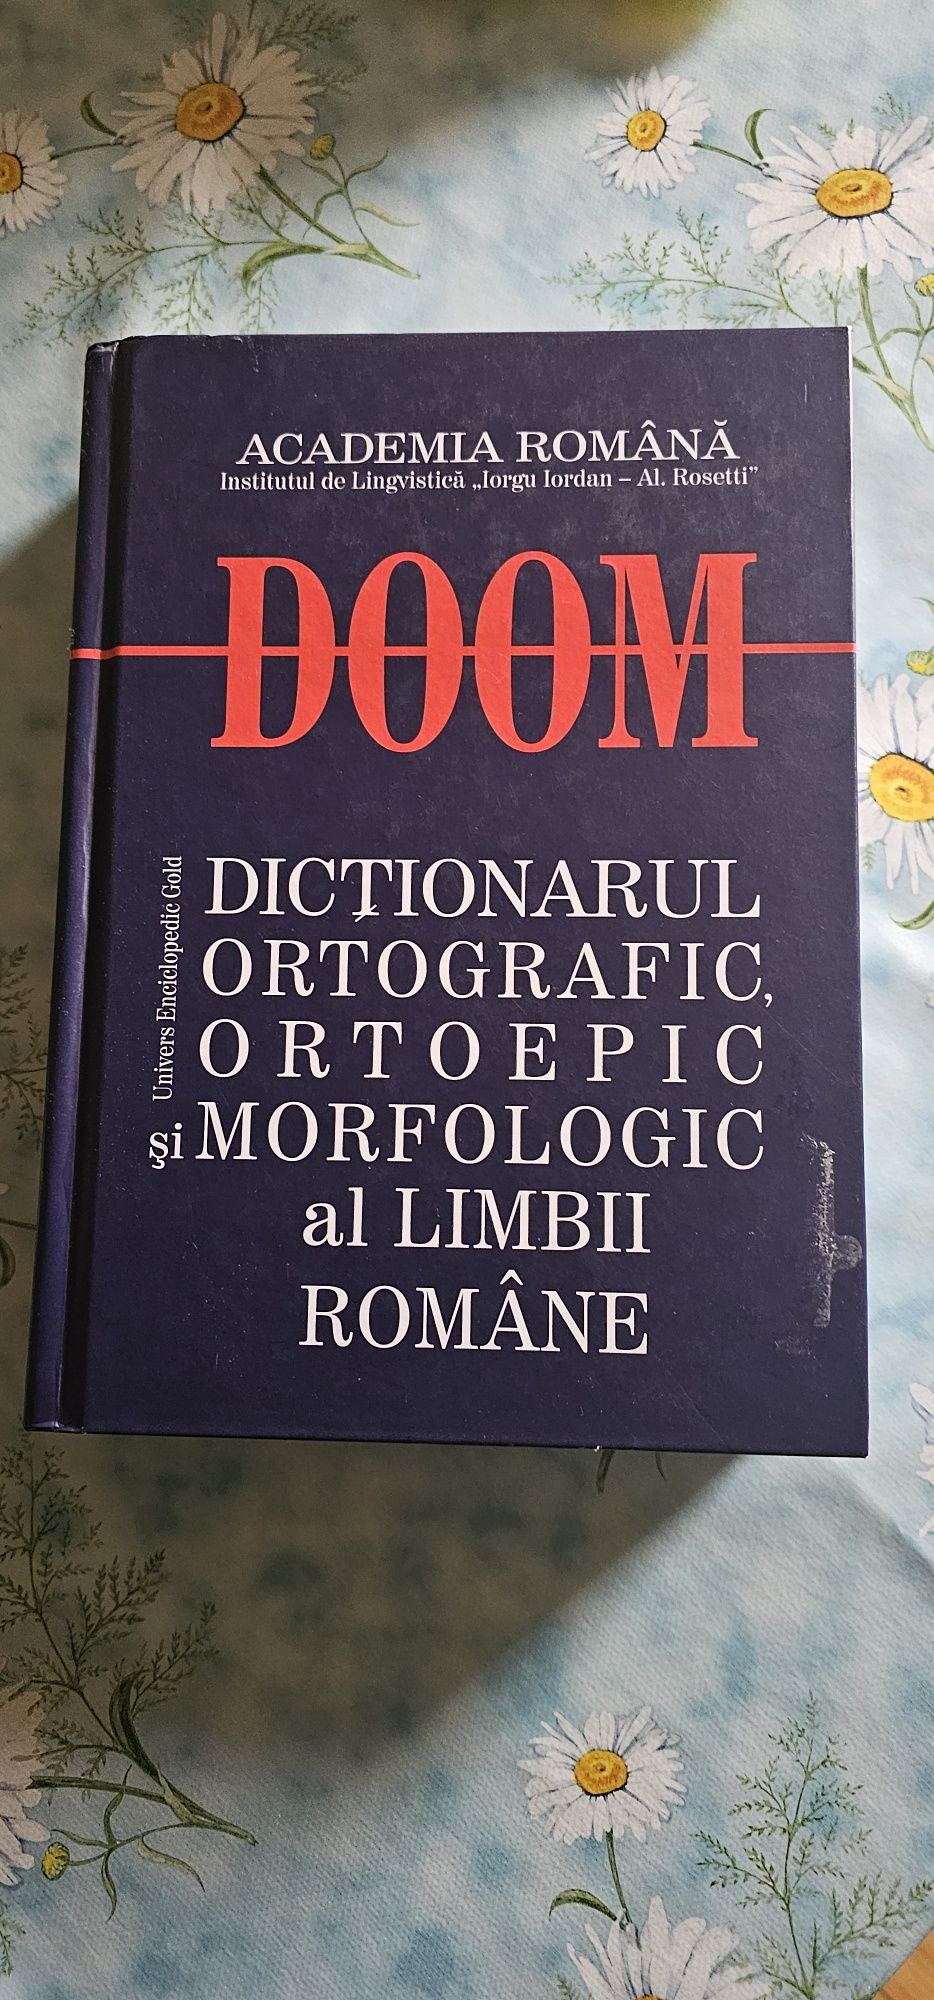 Vând Doom și alte cărți